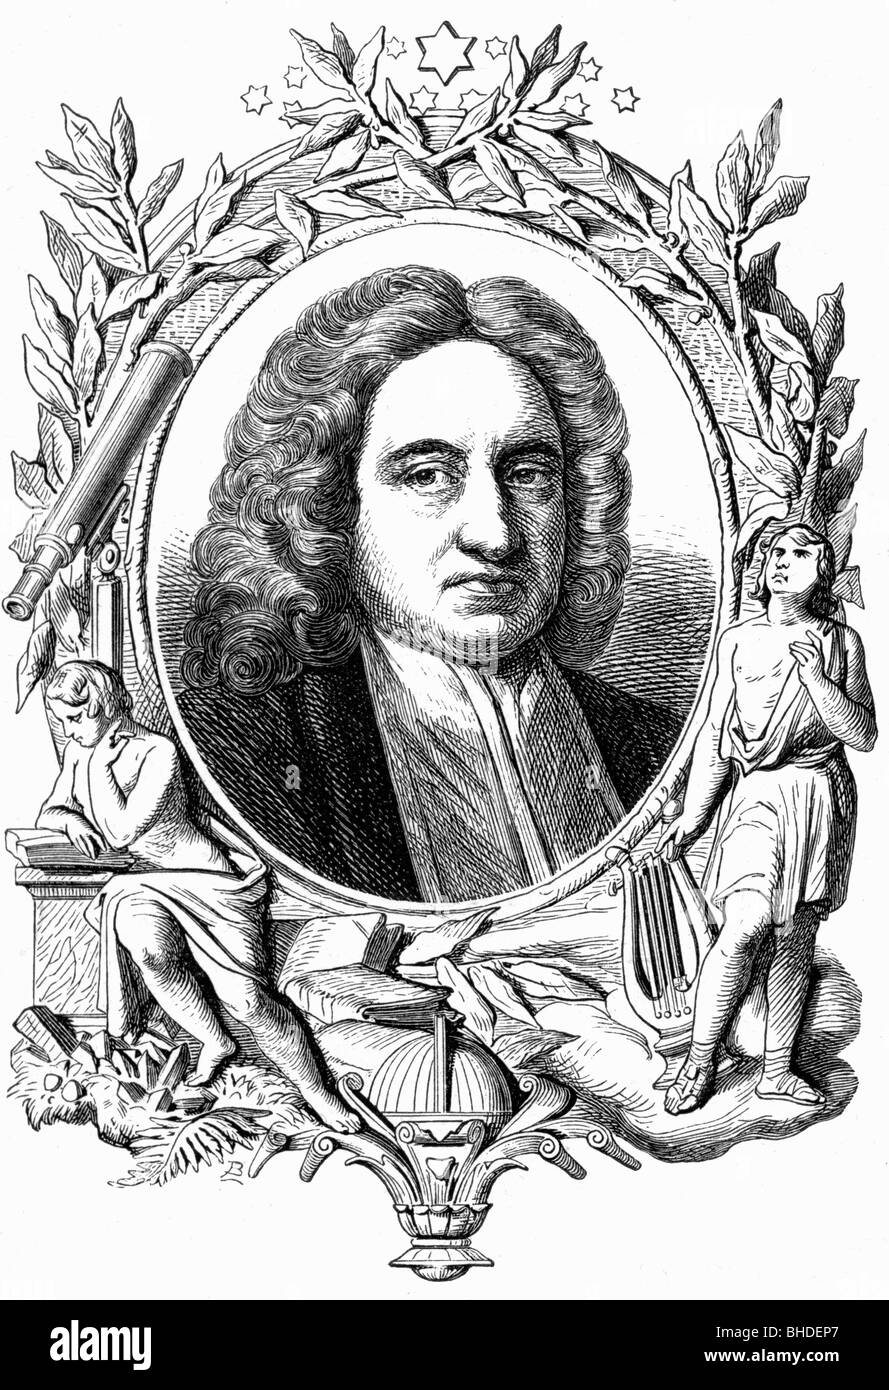 Halley, Edmund, 29.10.1656 - 14.1.1742, astronome anglais, portrait, illustration allégorique, XIXe siècle, Banque D'Images